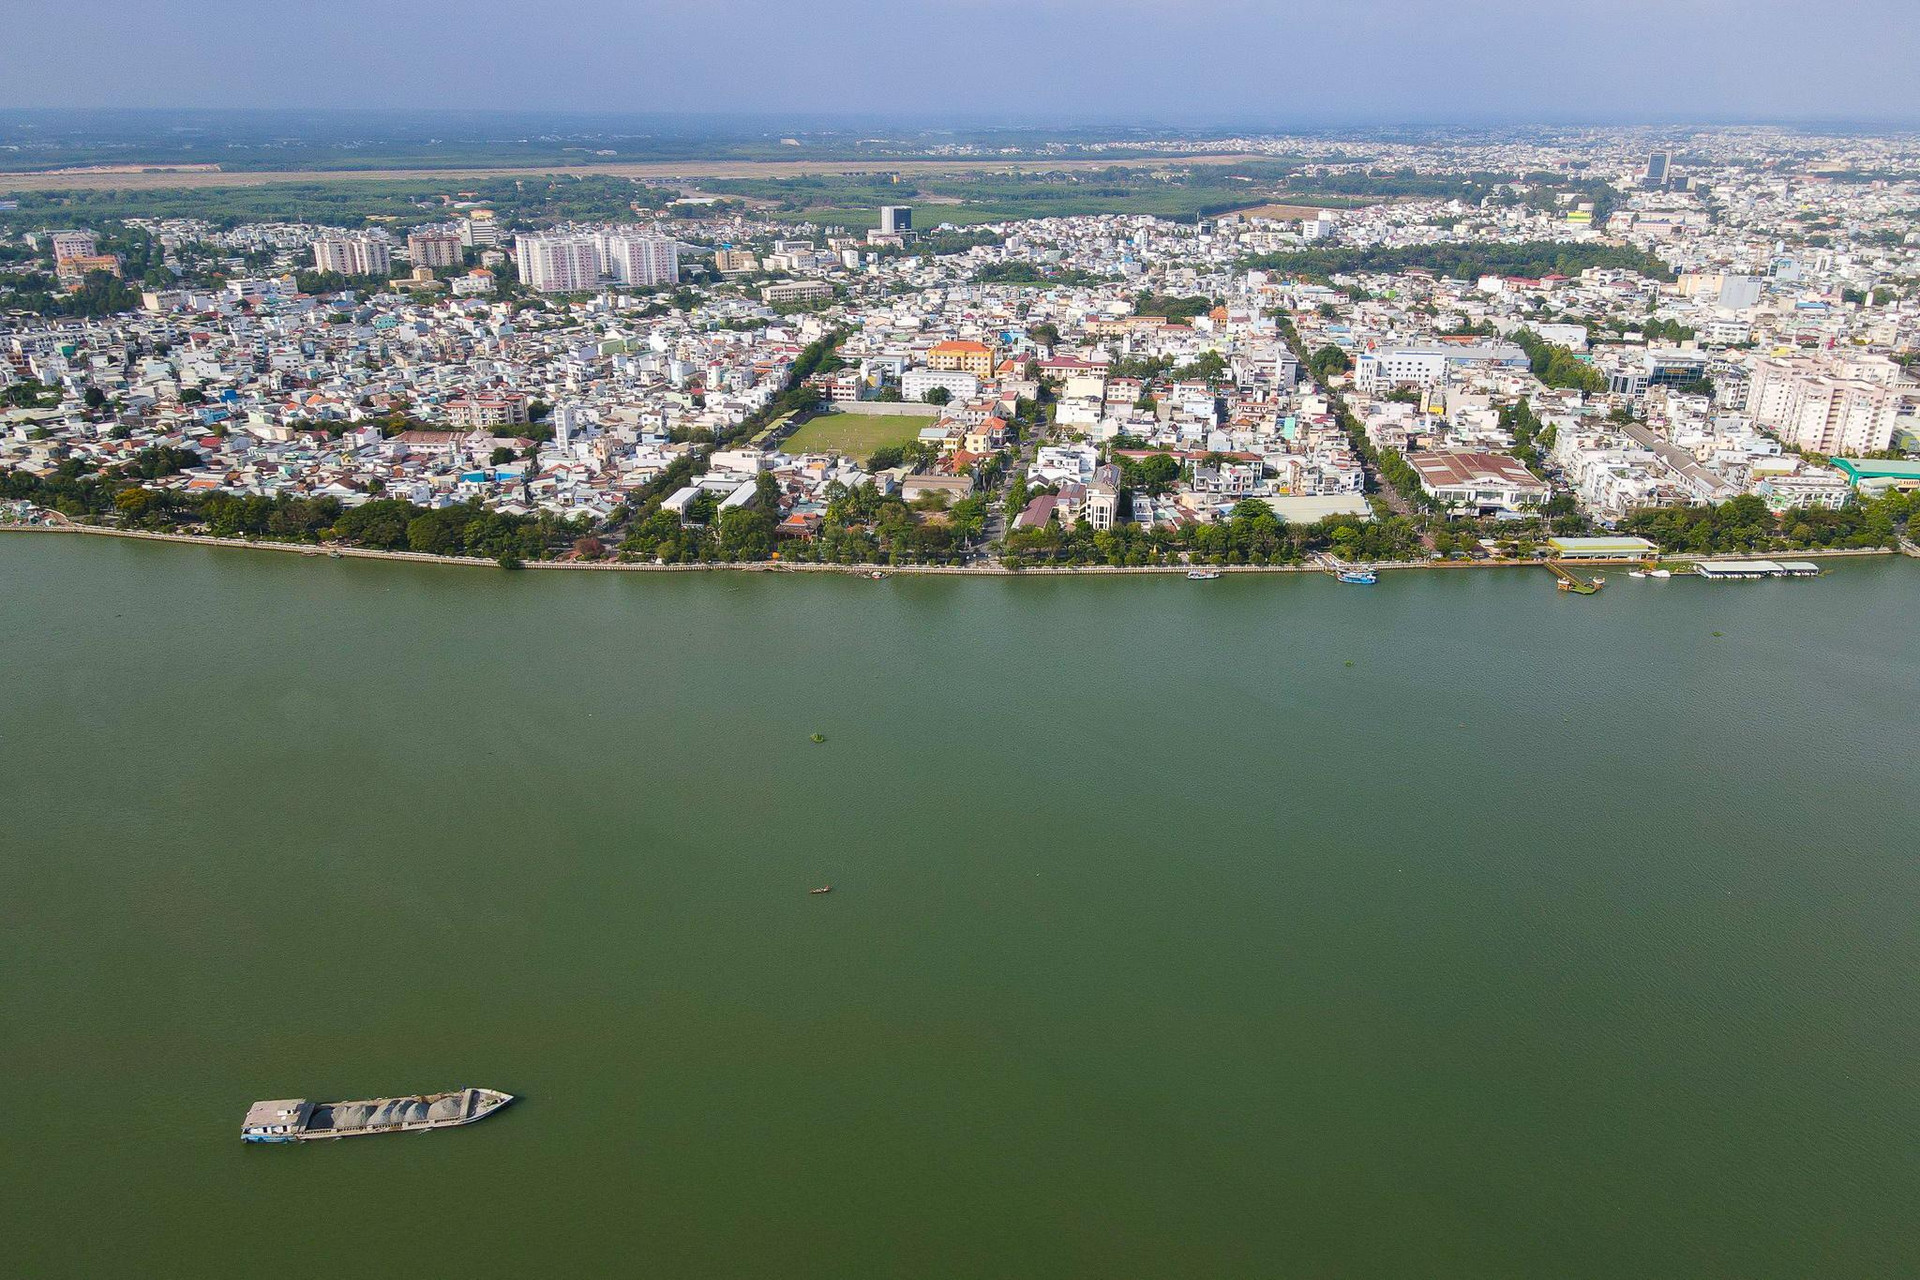 Diện mạo tỉnh có nhiều khu công nghiệp nhất Việt Nam - Ảnh 2.